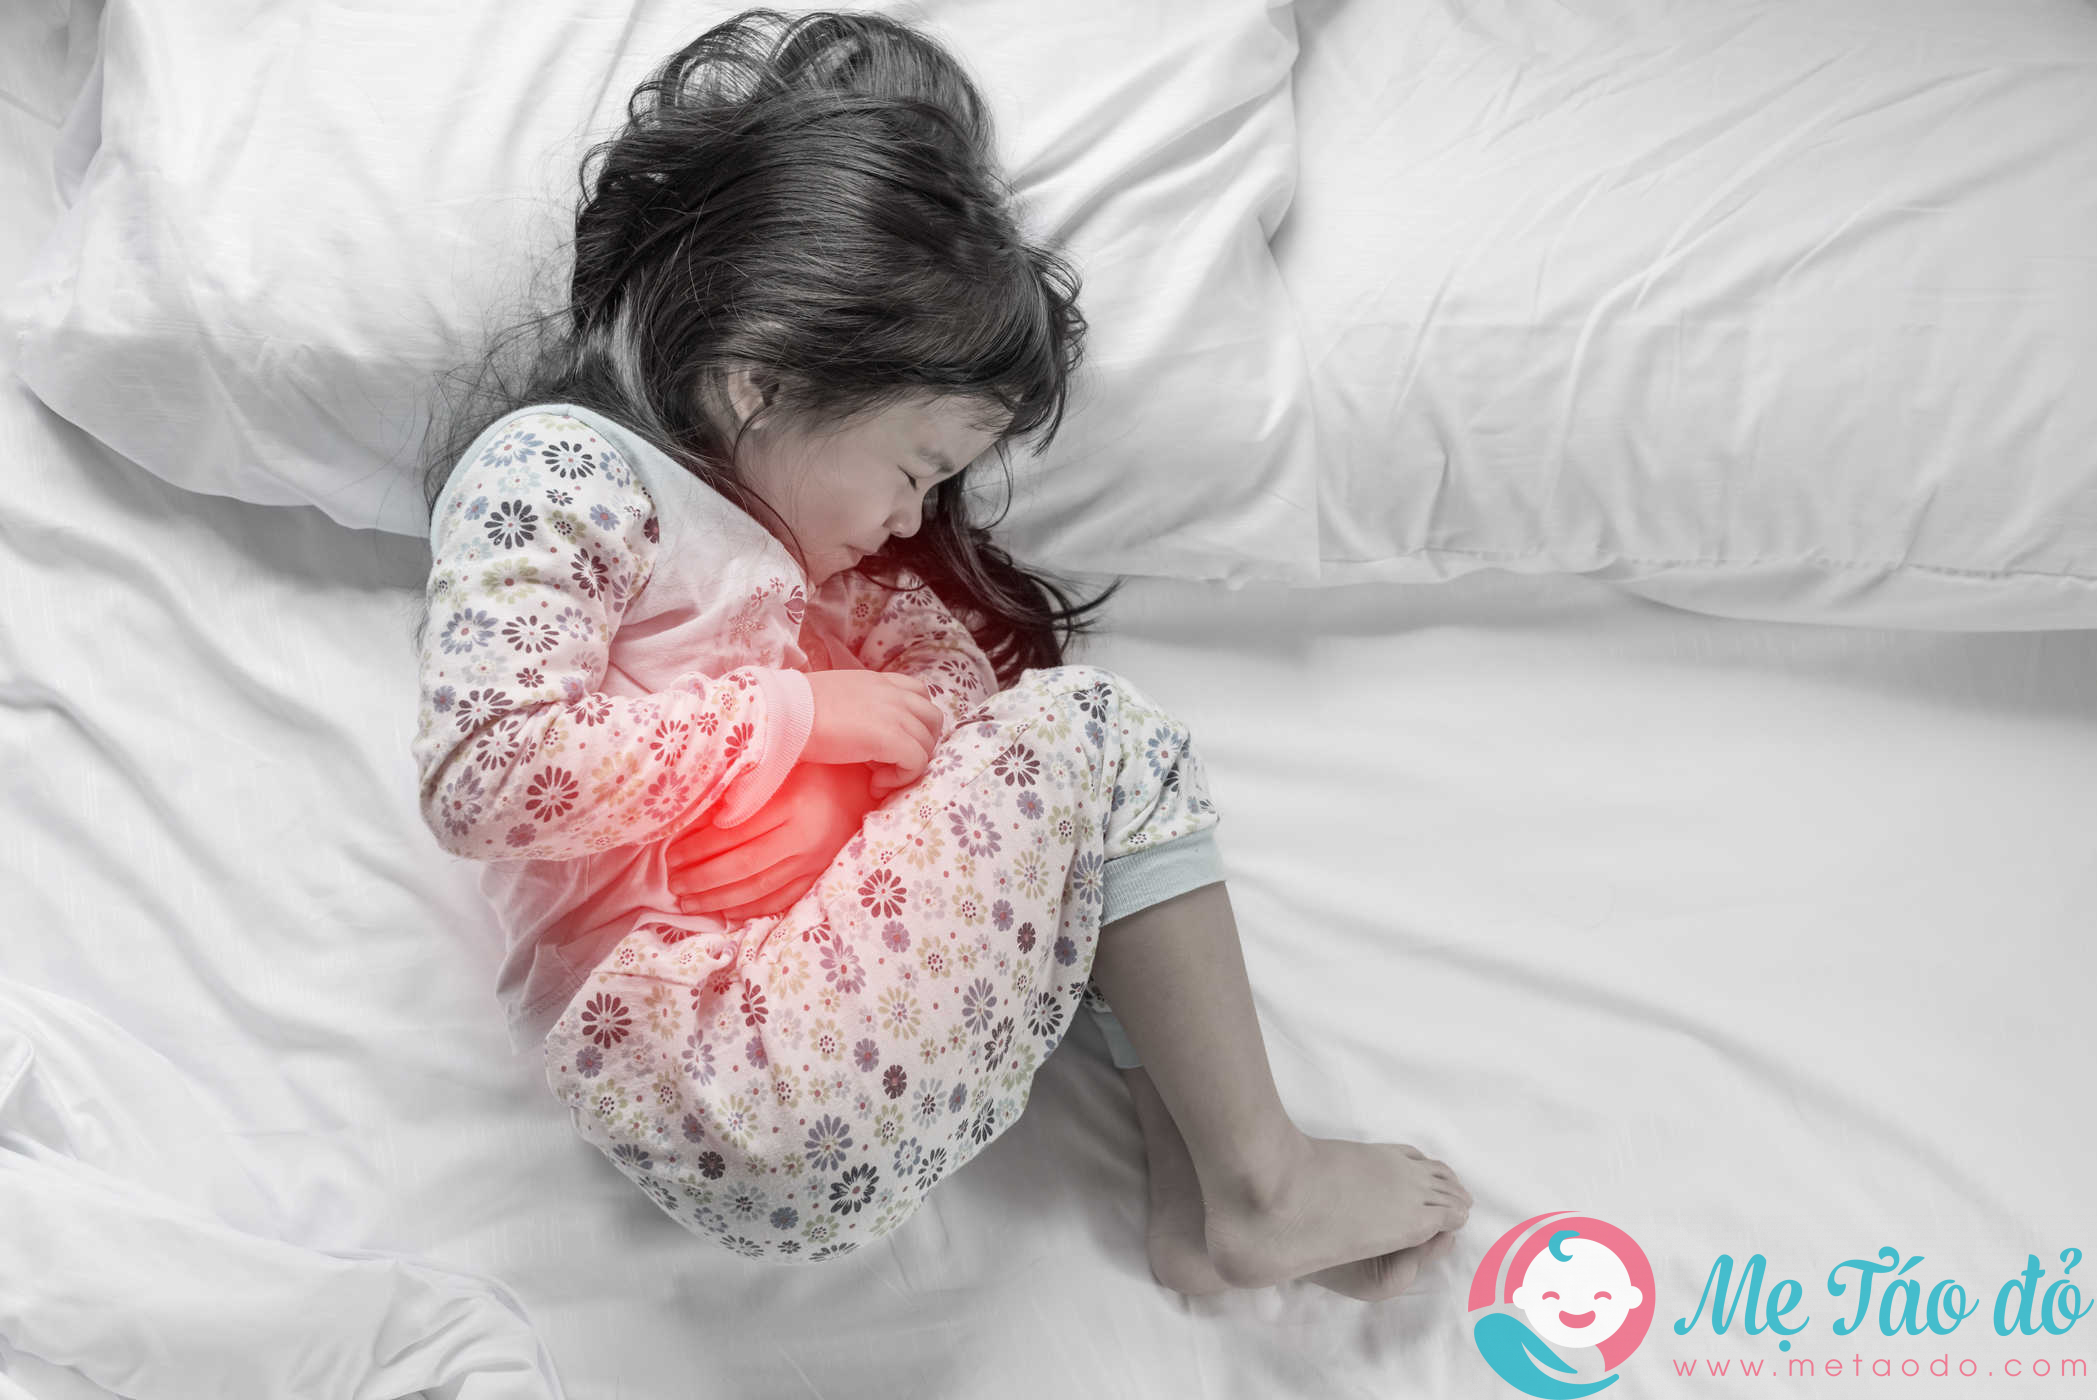 Hội chứng ruột kích thích ở trẻ là gì?